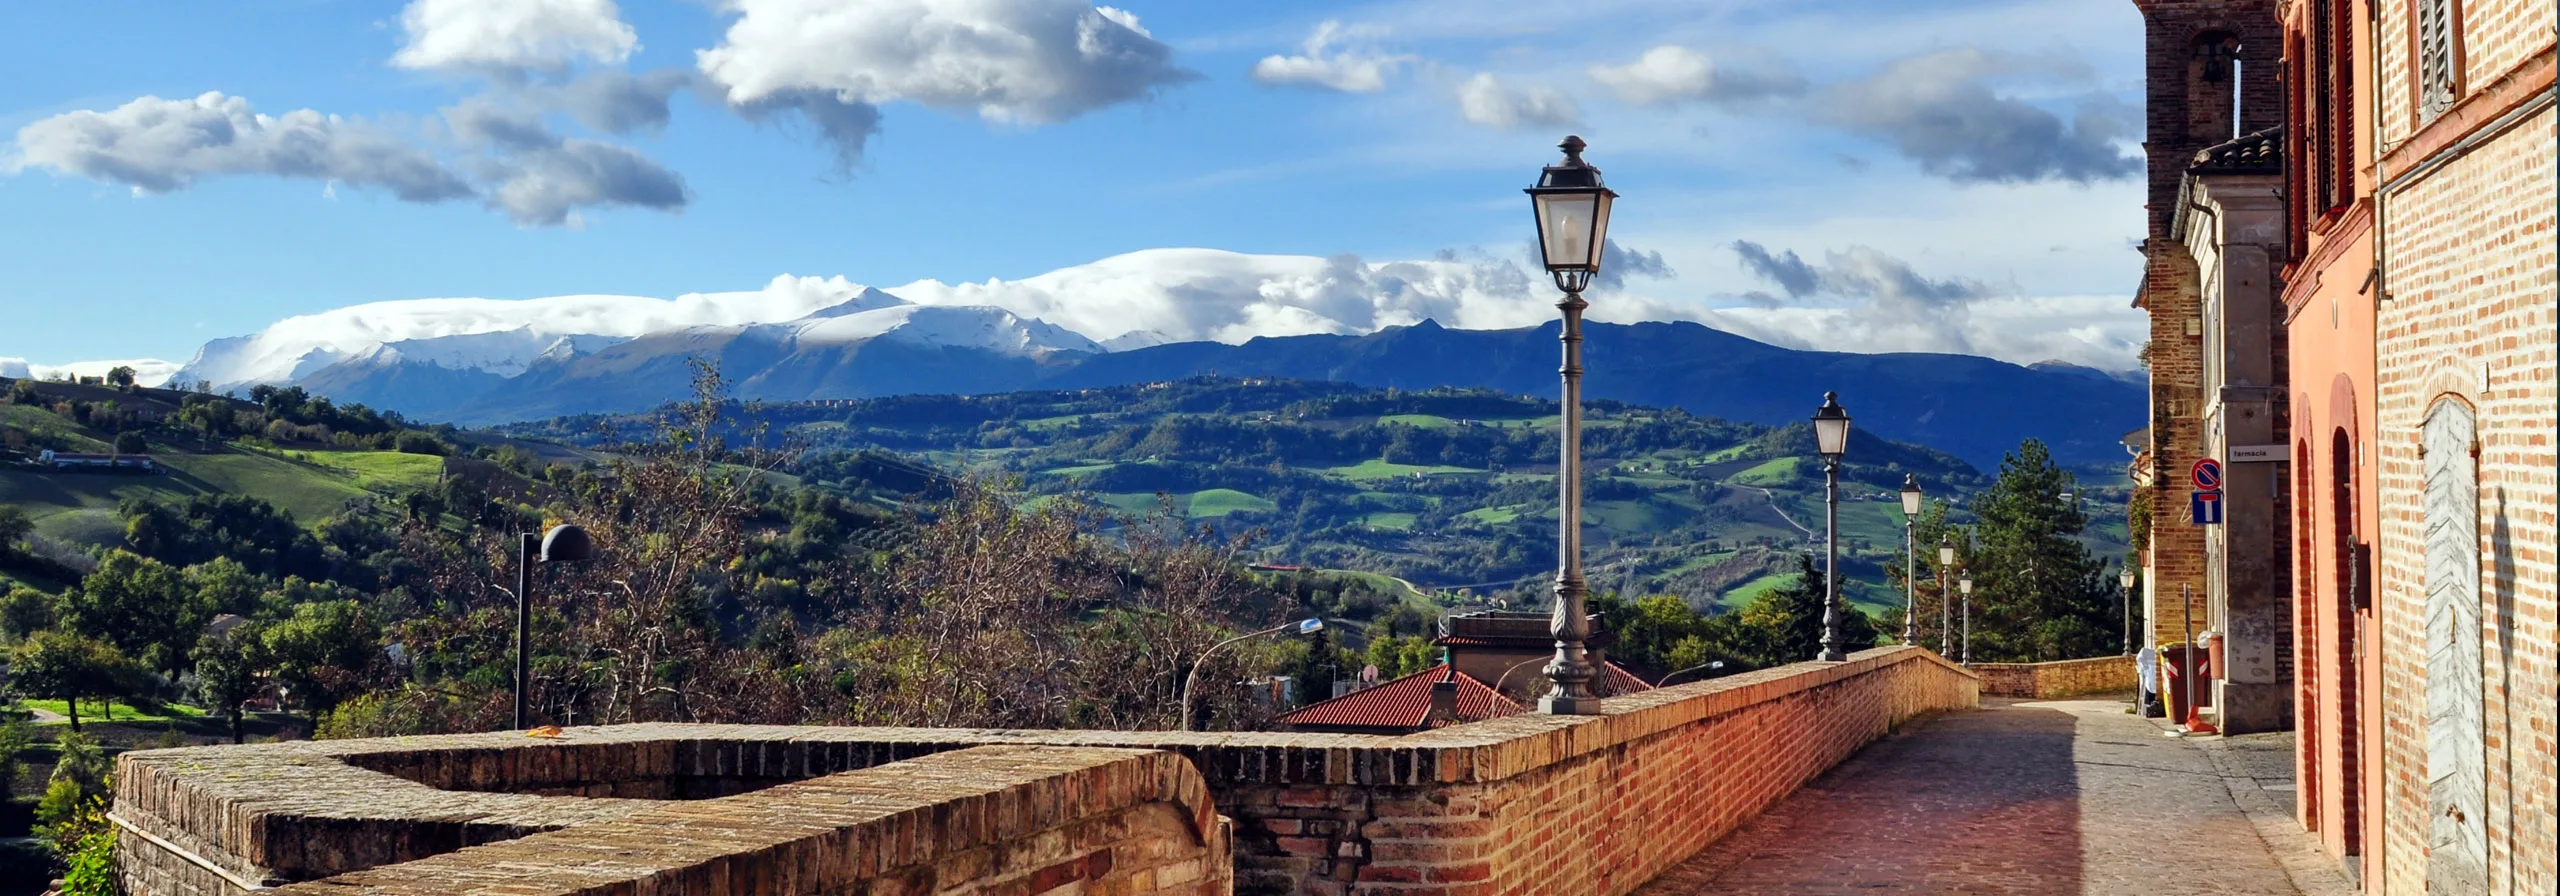 Veduta del panorama dal centro storico di Colmurano